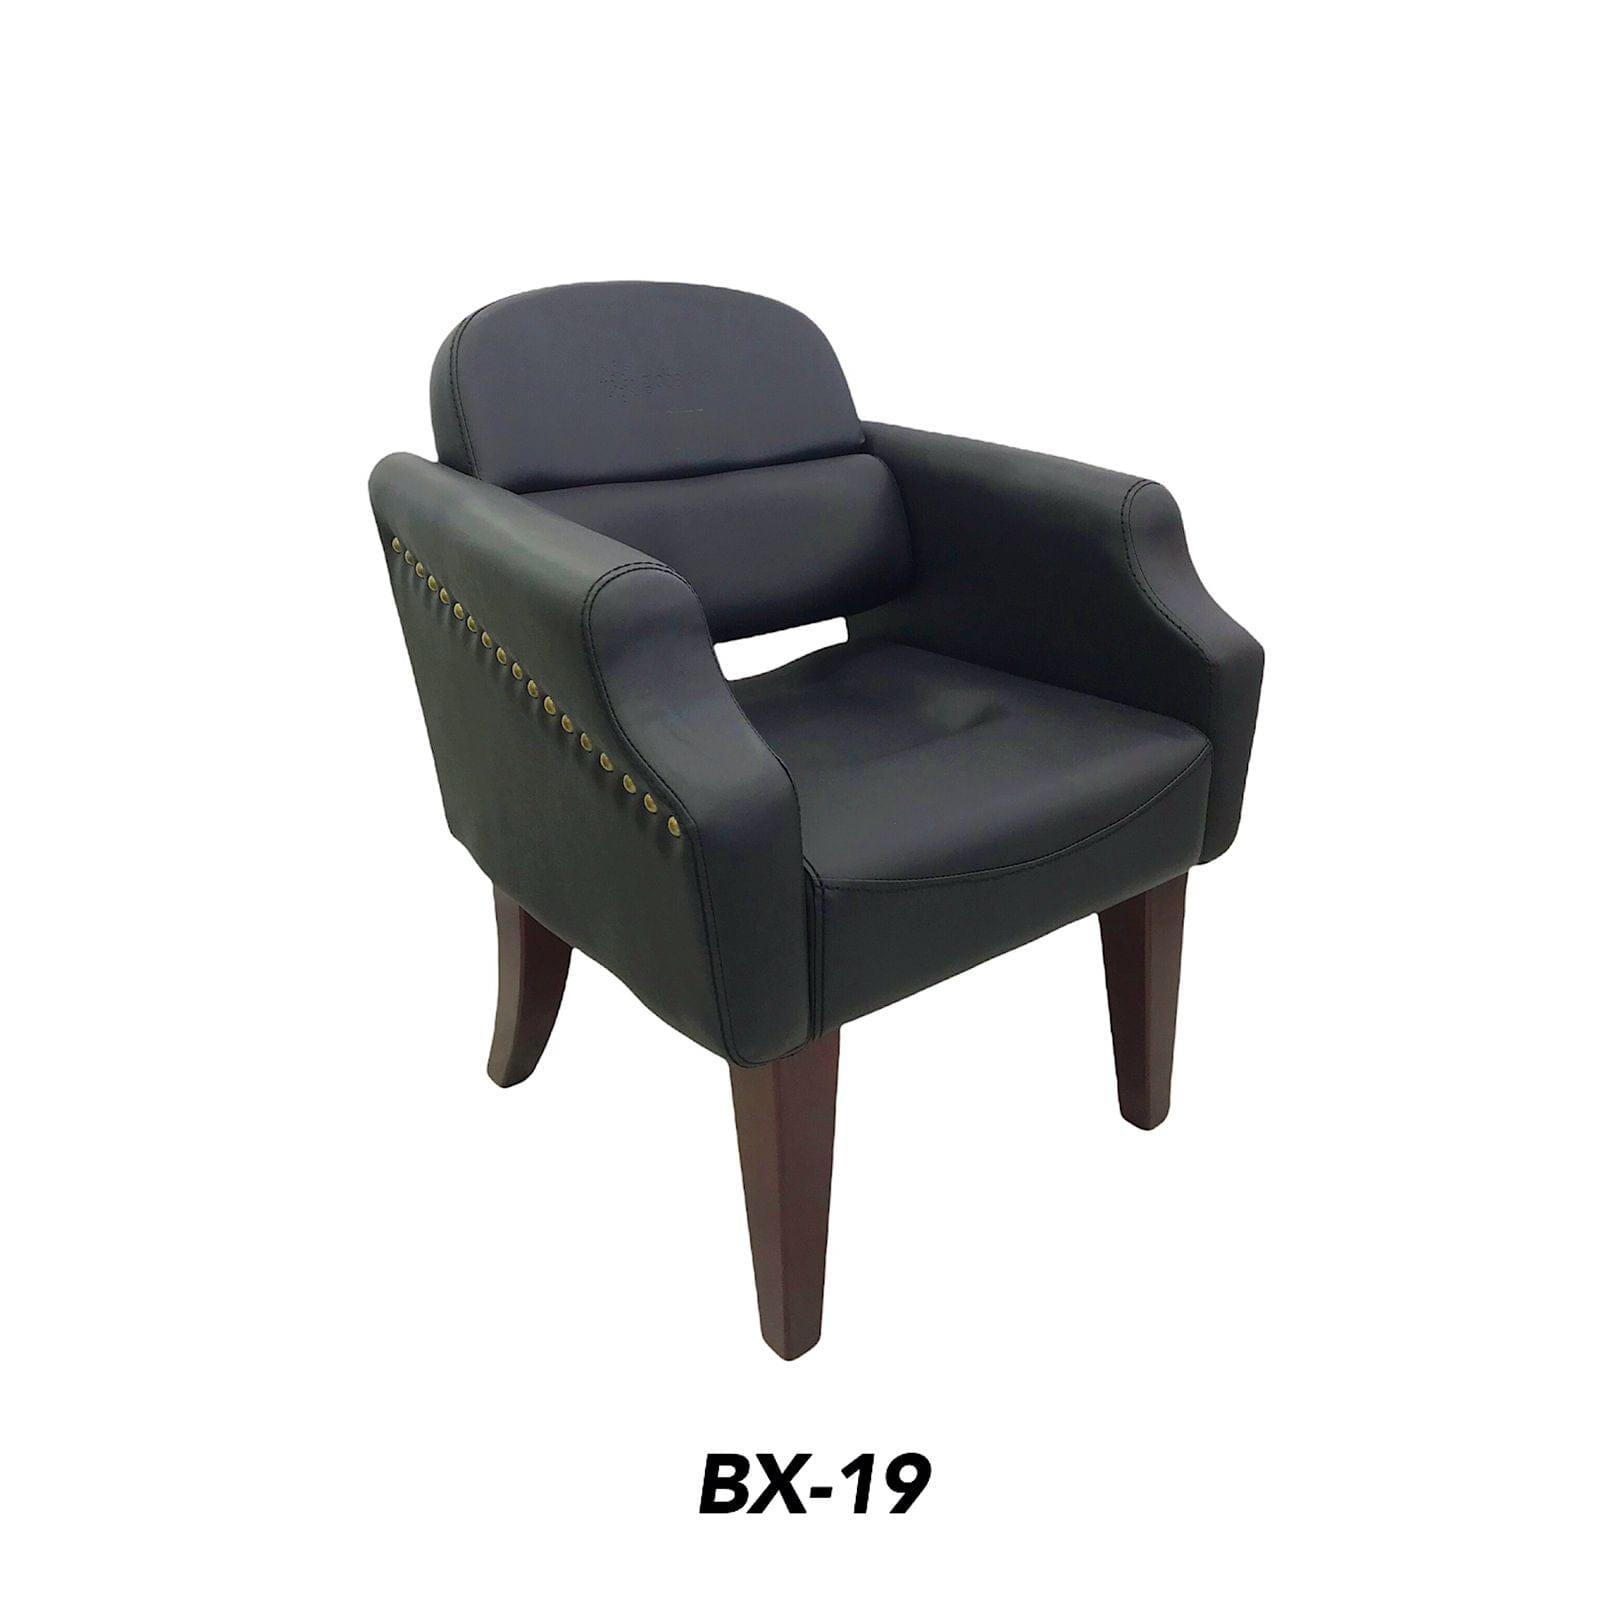 Globalstar Ladies Chair Black BX-19